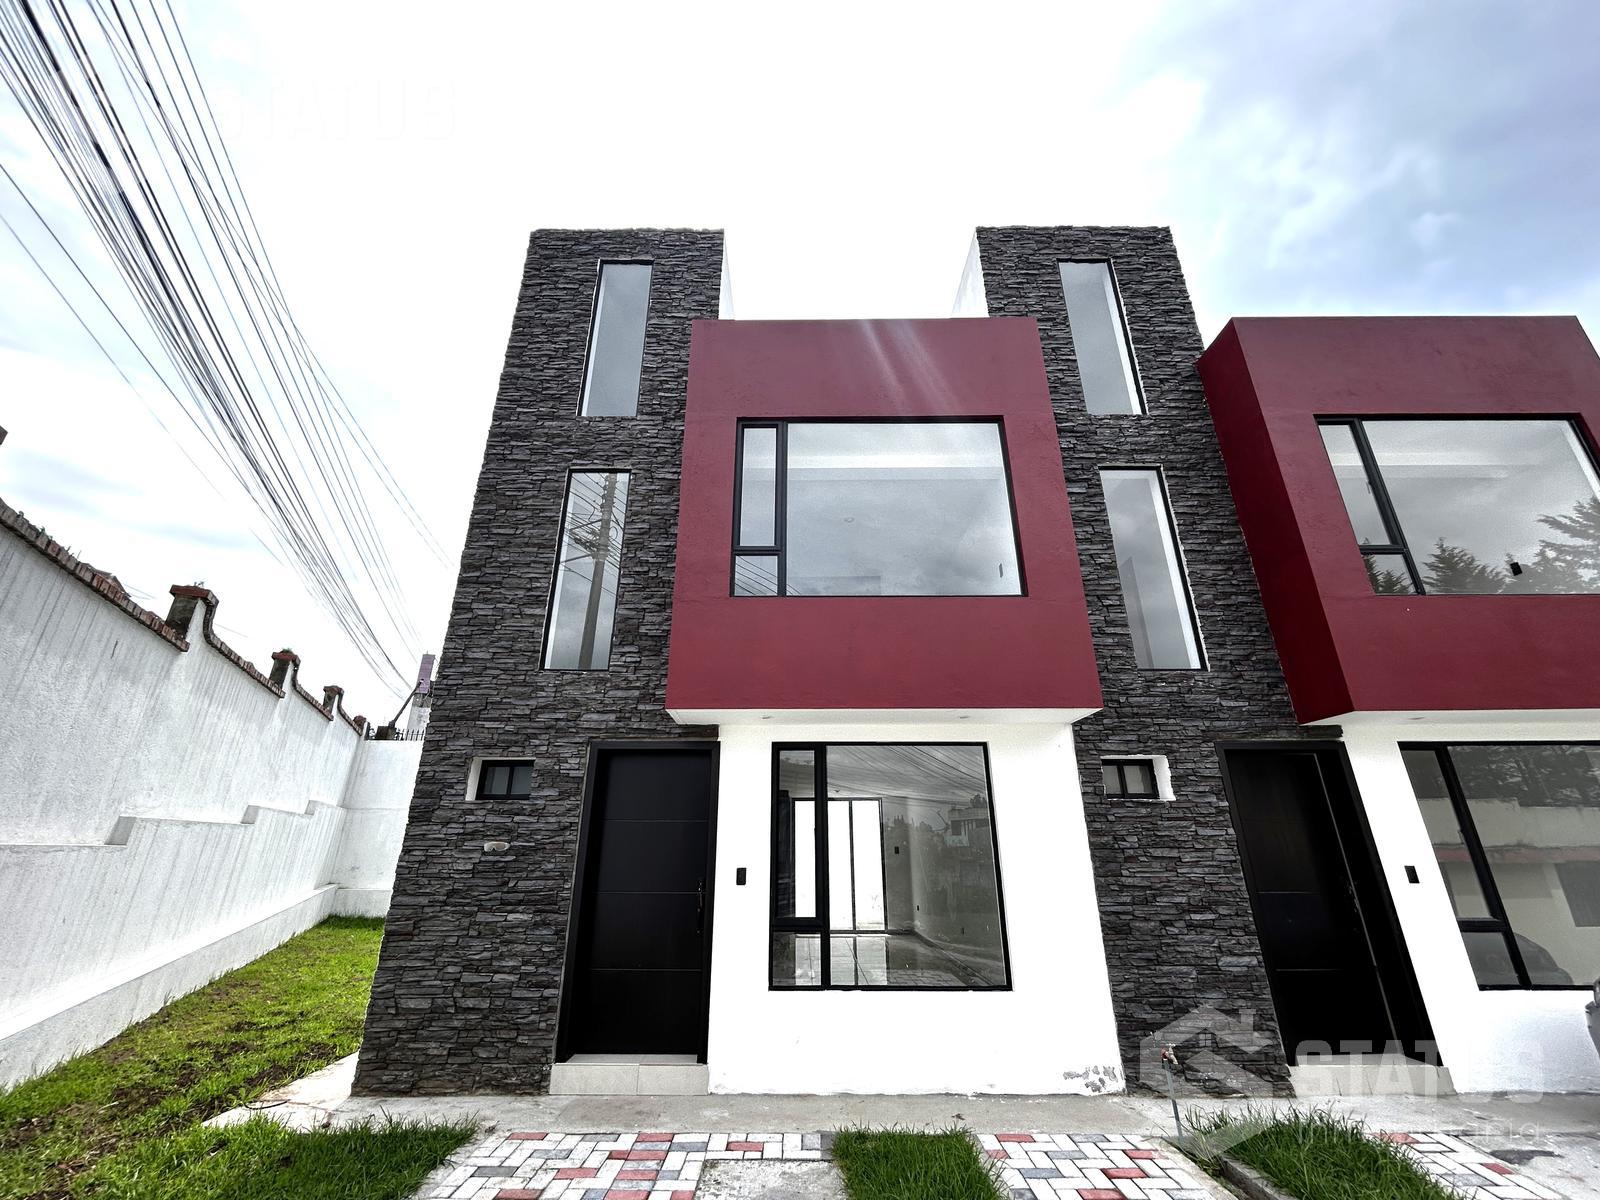 ¡Aplica crédito VIP! Vendo casa en conjunto sector La Armenia II, 3 Dorm., 1 Garaje, 110 m, $99.900